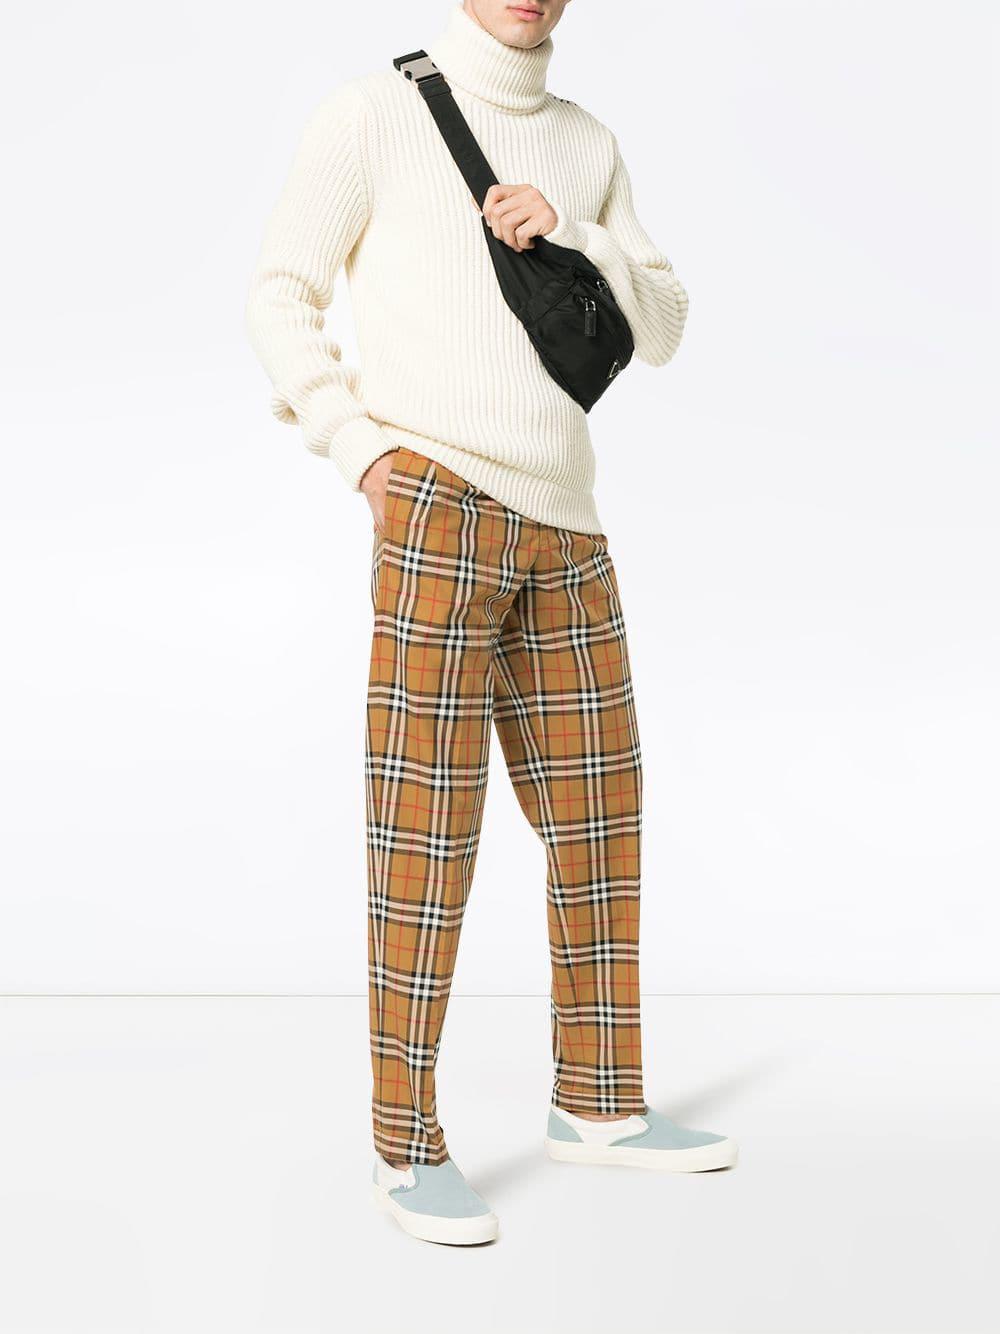 Burberry Trousers Hot Sale, 53% OFF | ilikepinga.com